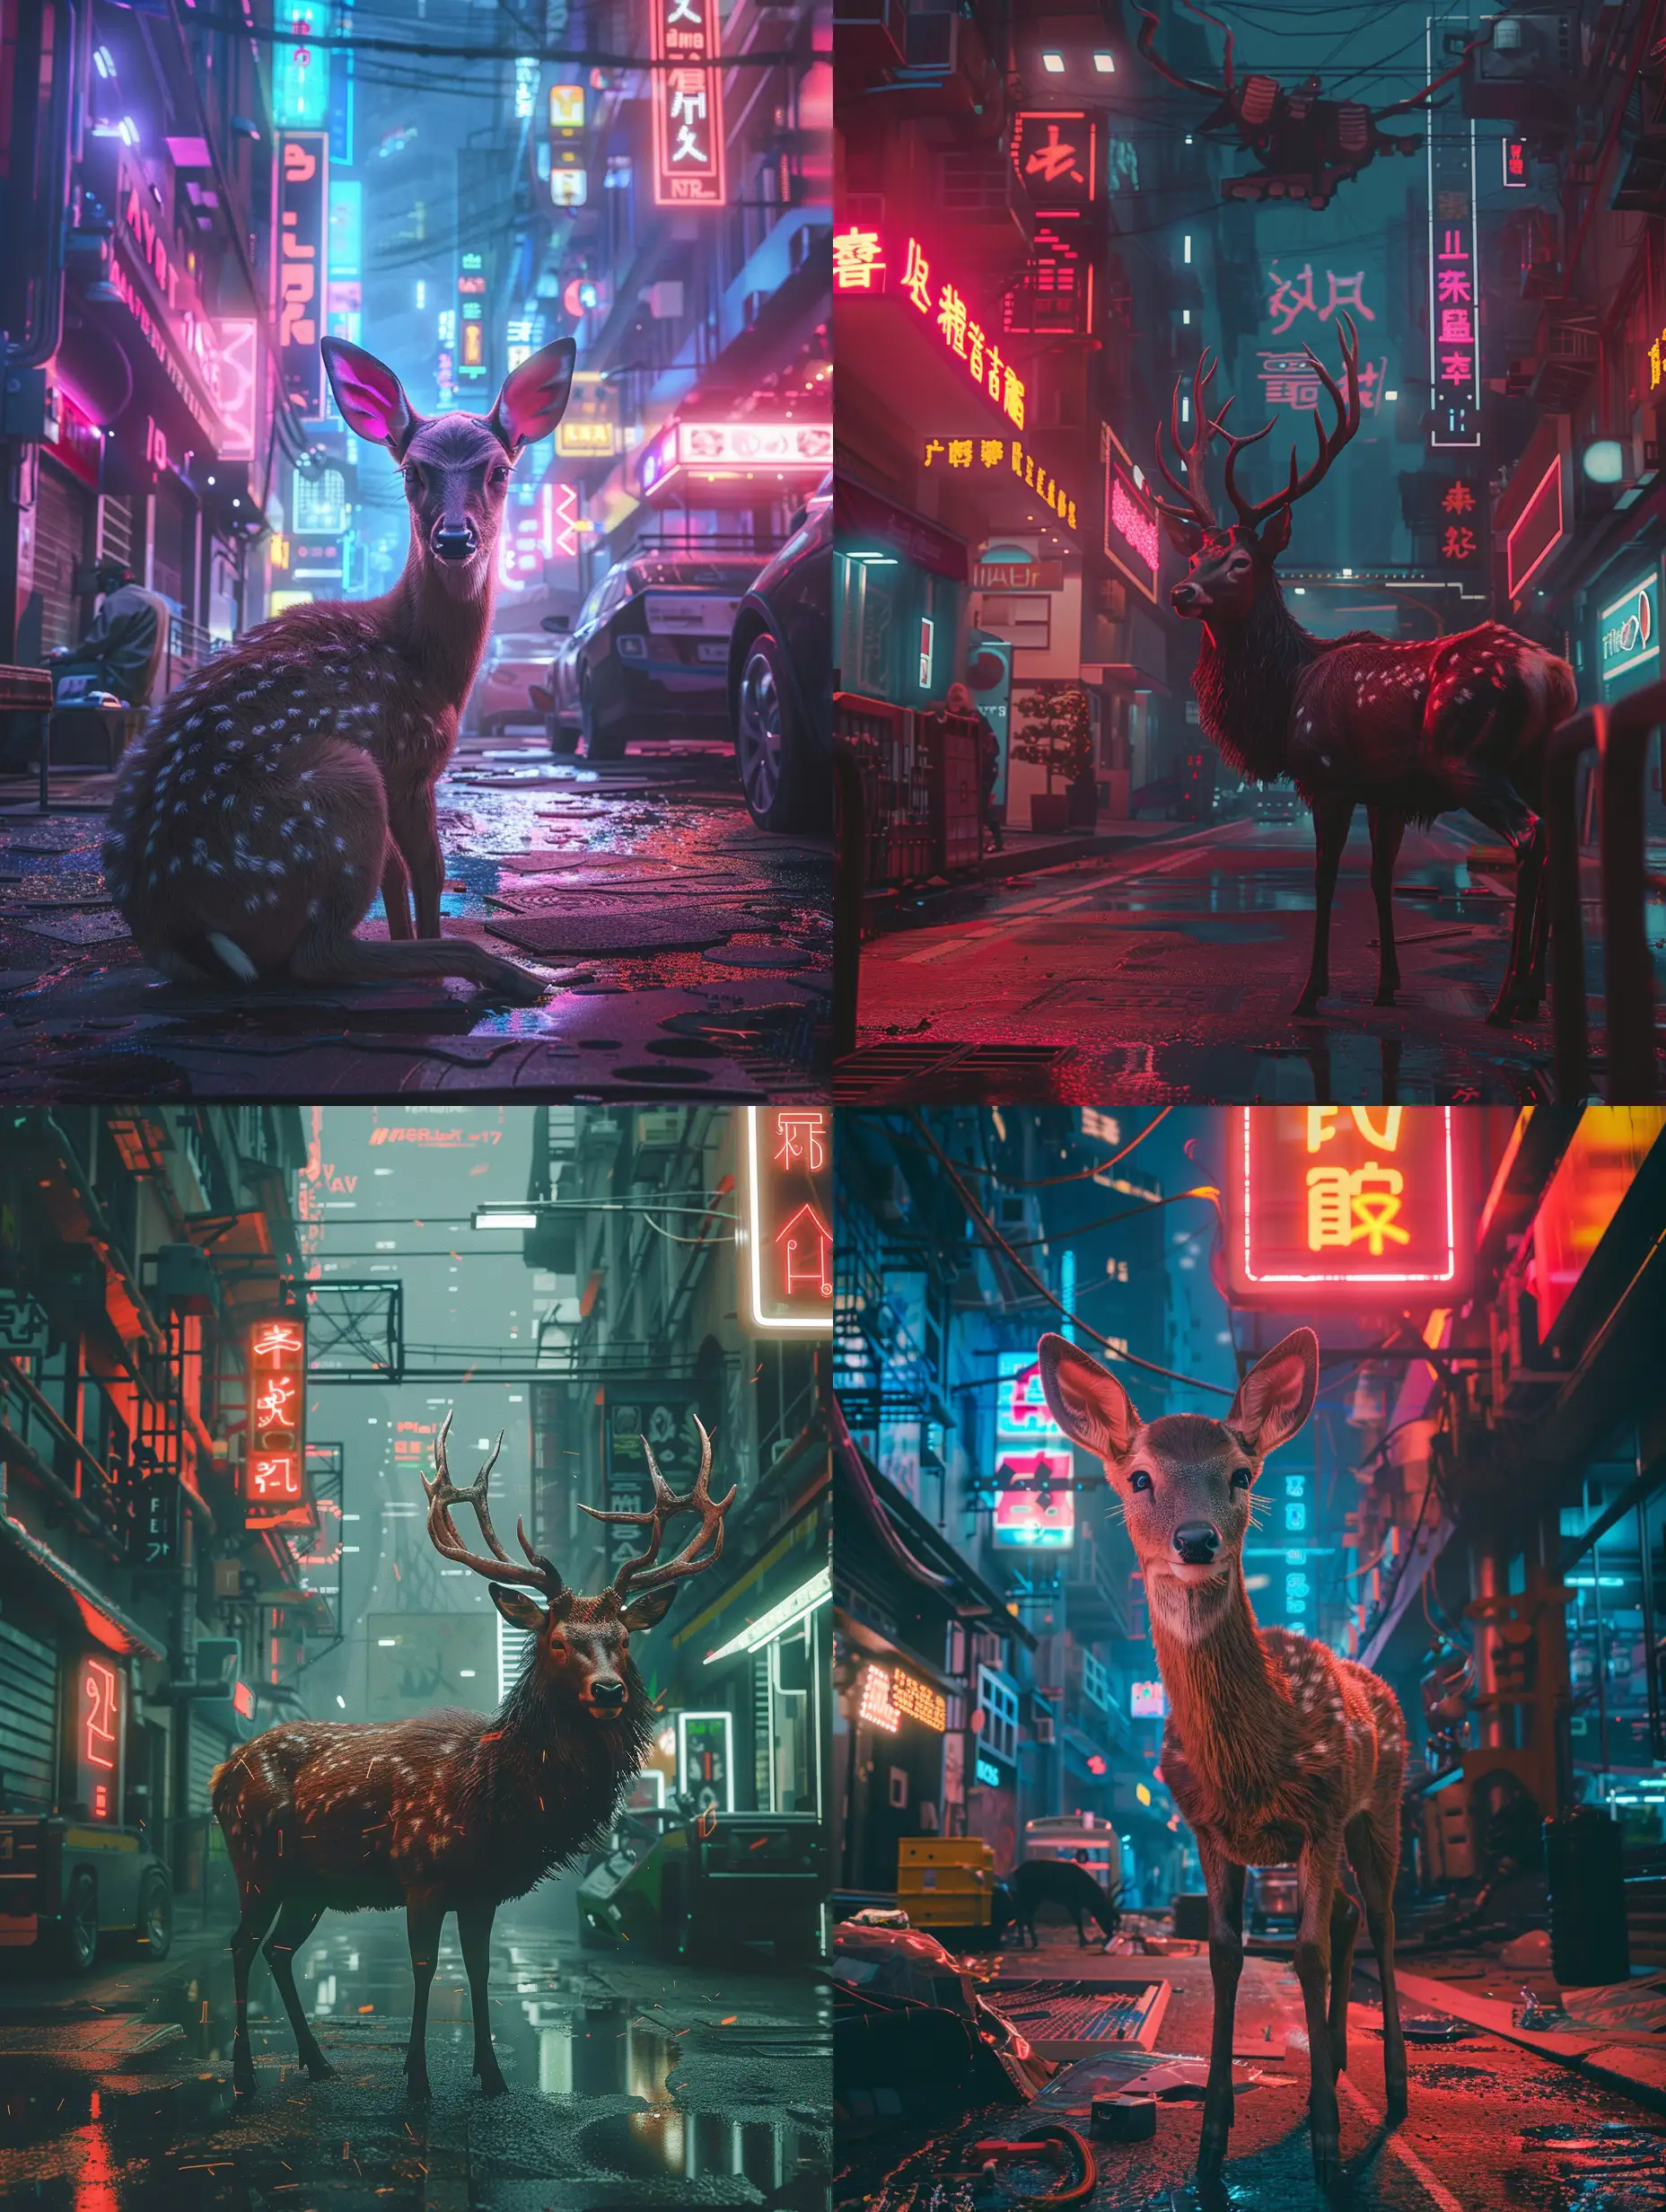 A lonley deer in a cyberpunk city, in the middle of a street, neon lights, Cyberpunk 2077 style